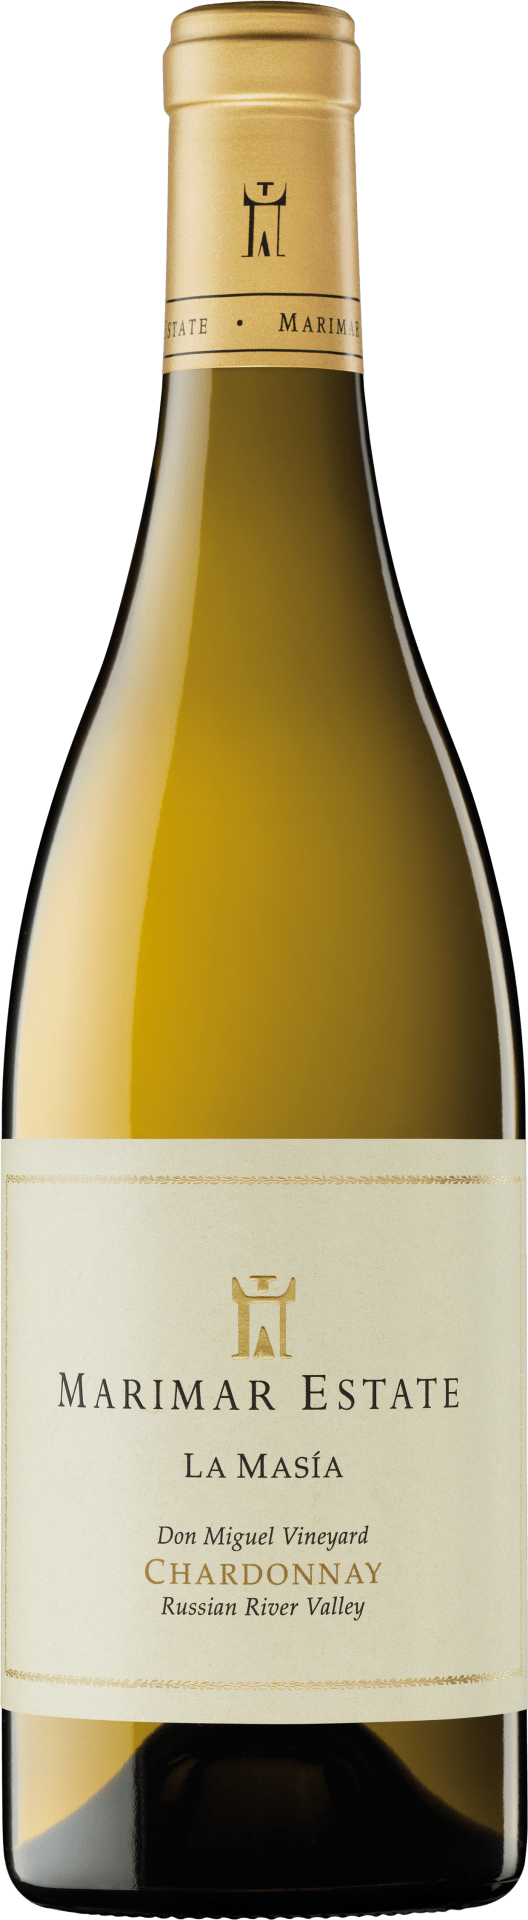 La Masía Chardonnay Don Miguel Vineyard Russian River Valley